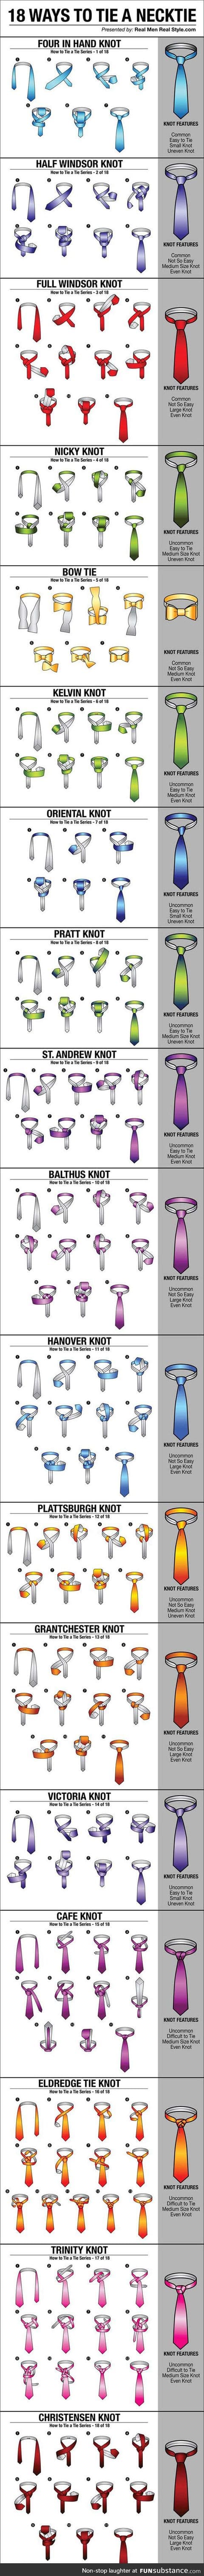 Ways to tie a necktie